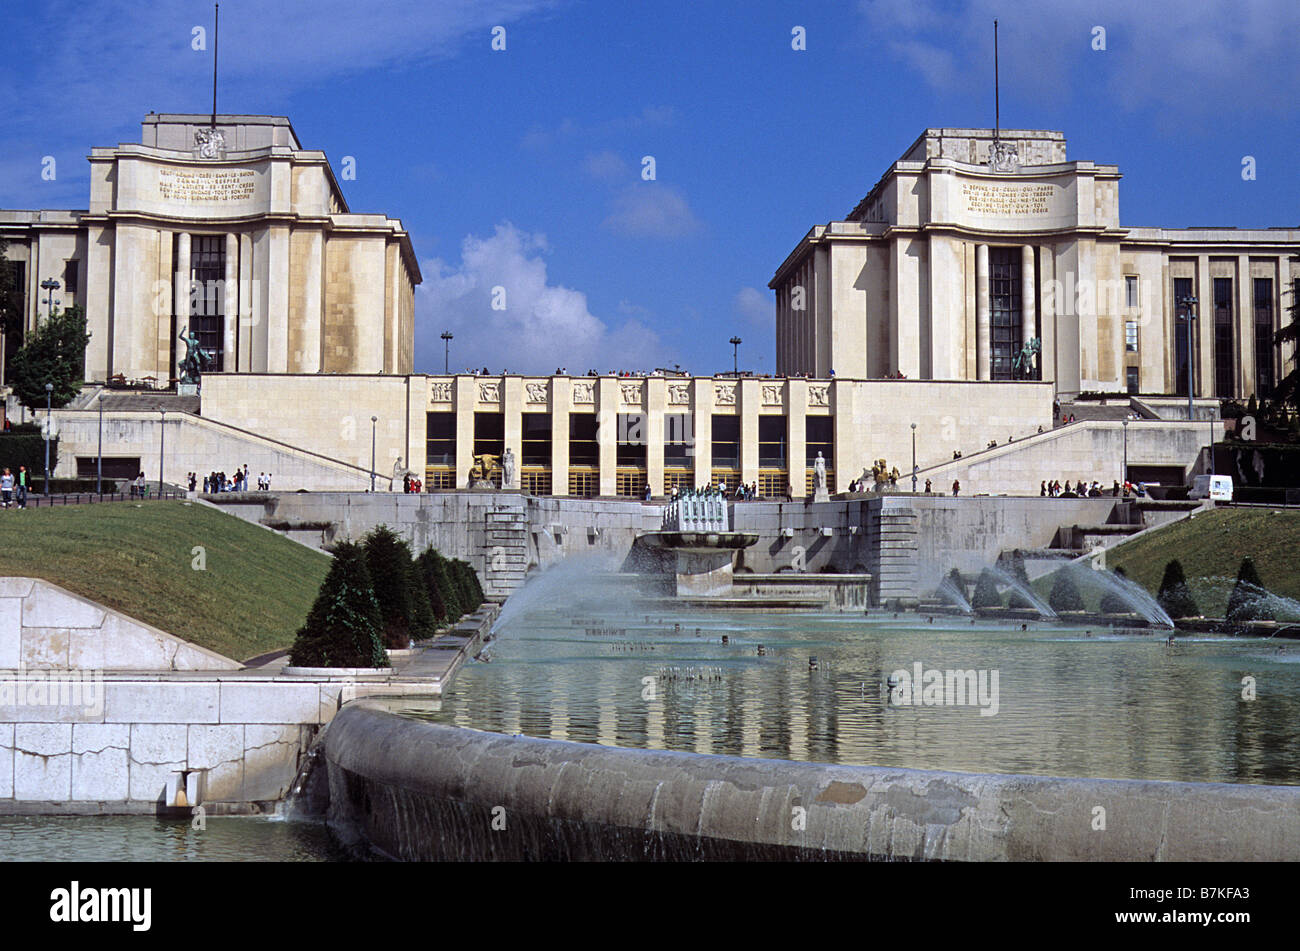 Paris, Palais de Chaillot, general view of central section. Stock Photo